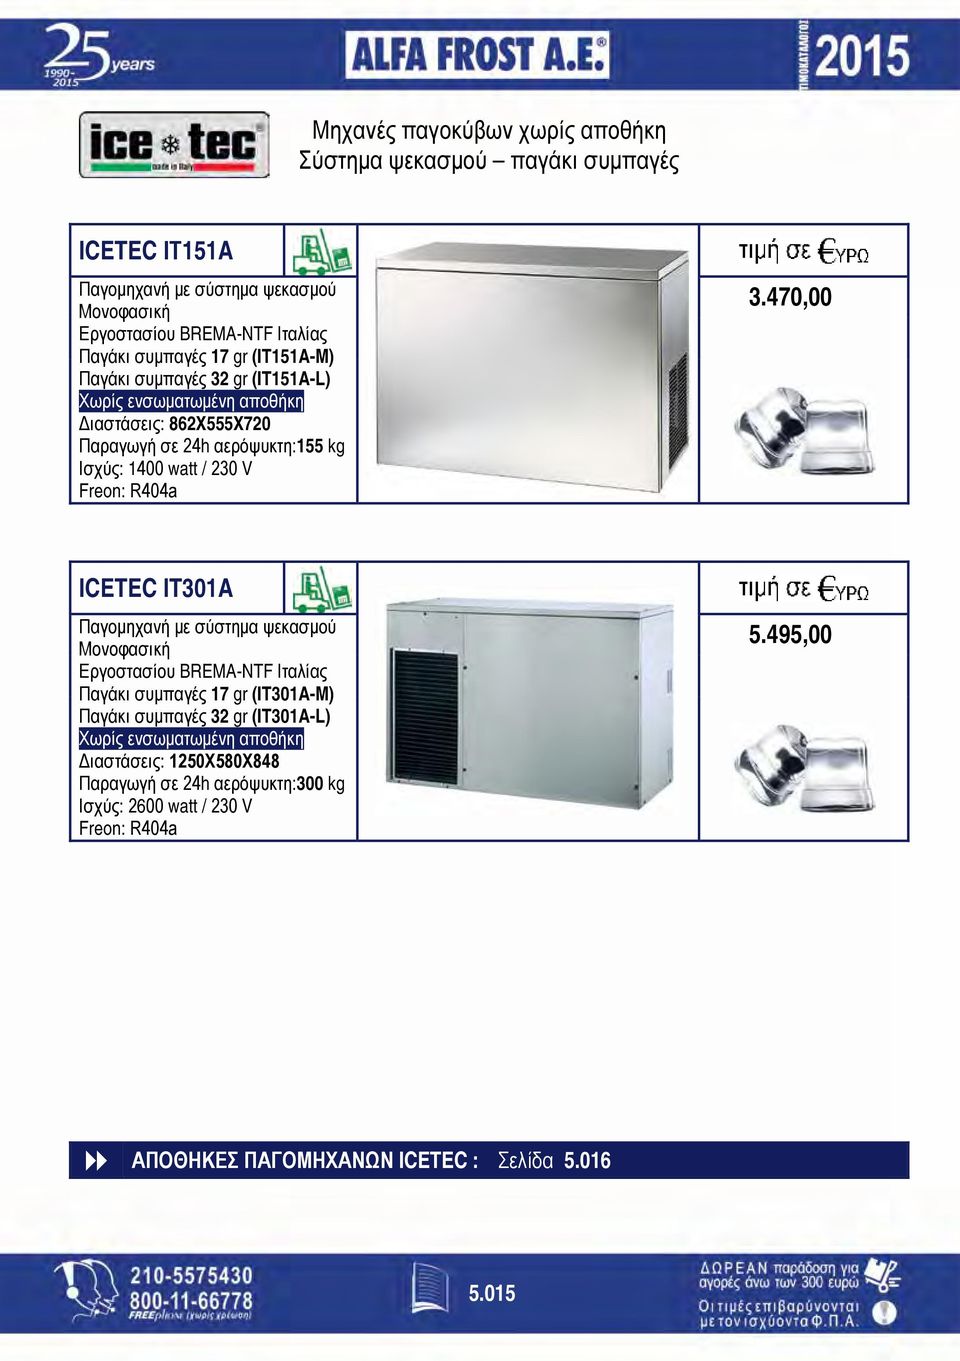 3.470,00 ICETEC IT301A Παγομηχανή με σύστημα ψεκασμού Μονοφασική Εργοστασίου BREMA-NTF Ιταλίας Παγάκι συμπαγές 17 gr (IT301A-Μ) Παγάκι συμπαγές 32 gr